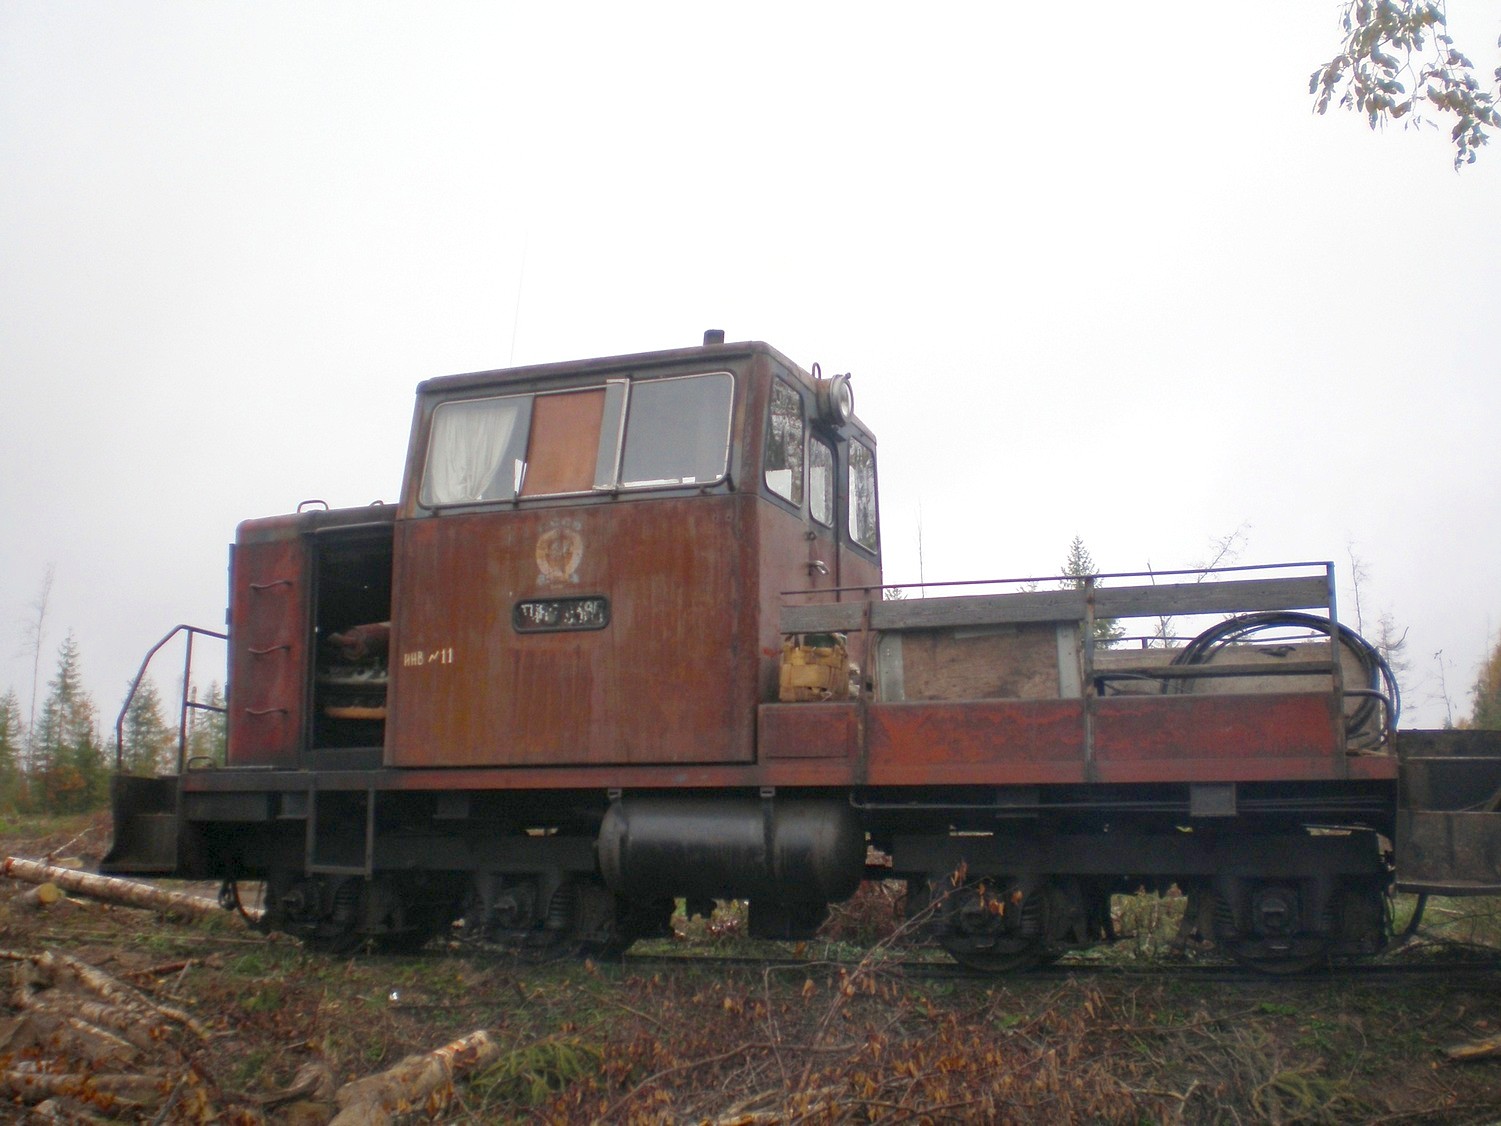 Лунданская узкоколейная железная дорога  —  фотографии, сделанные в 2007 году (часть 4)